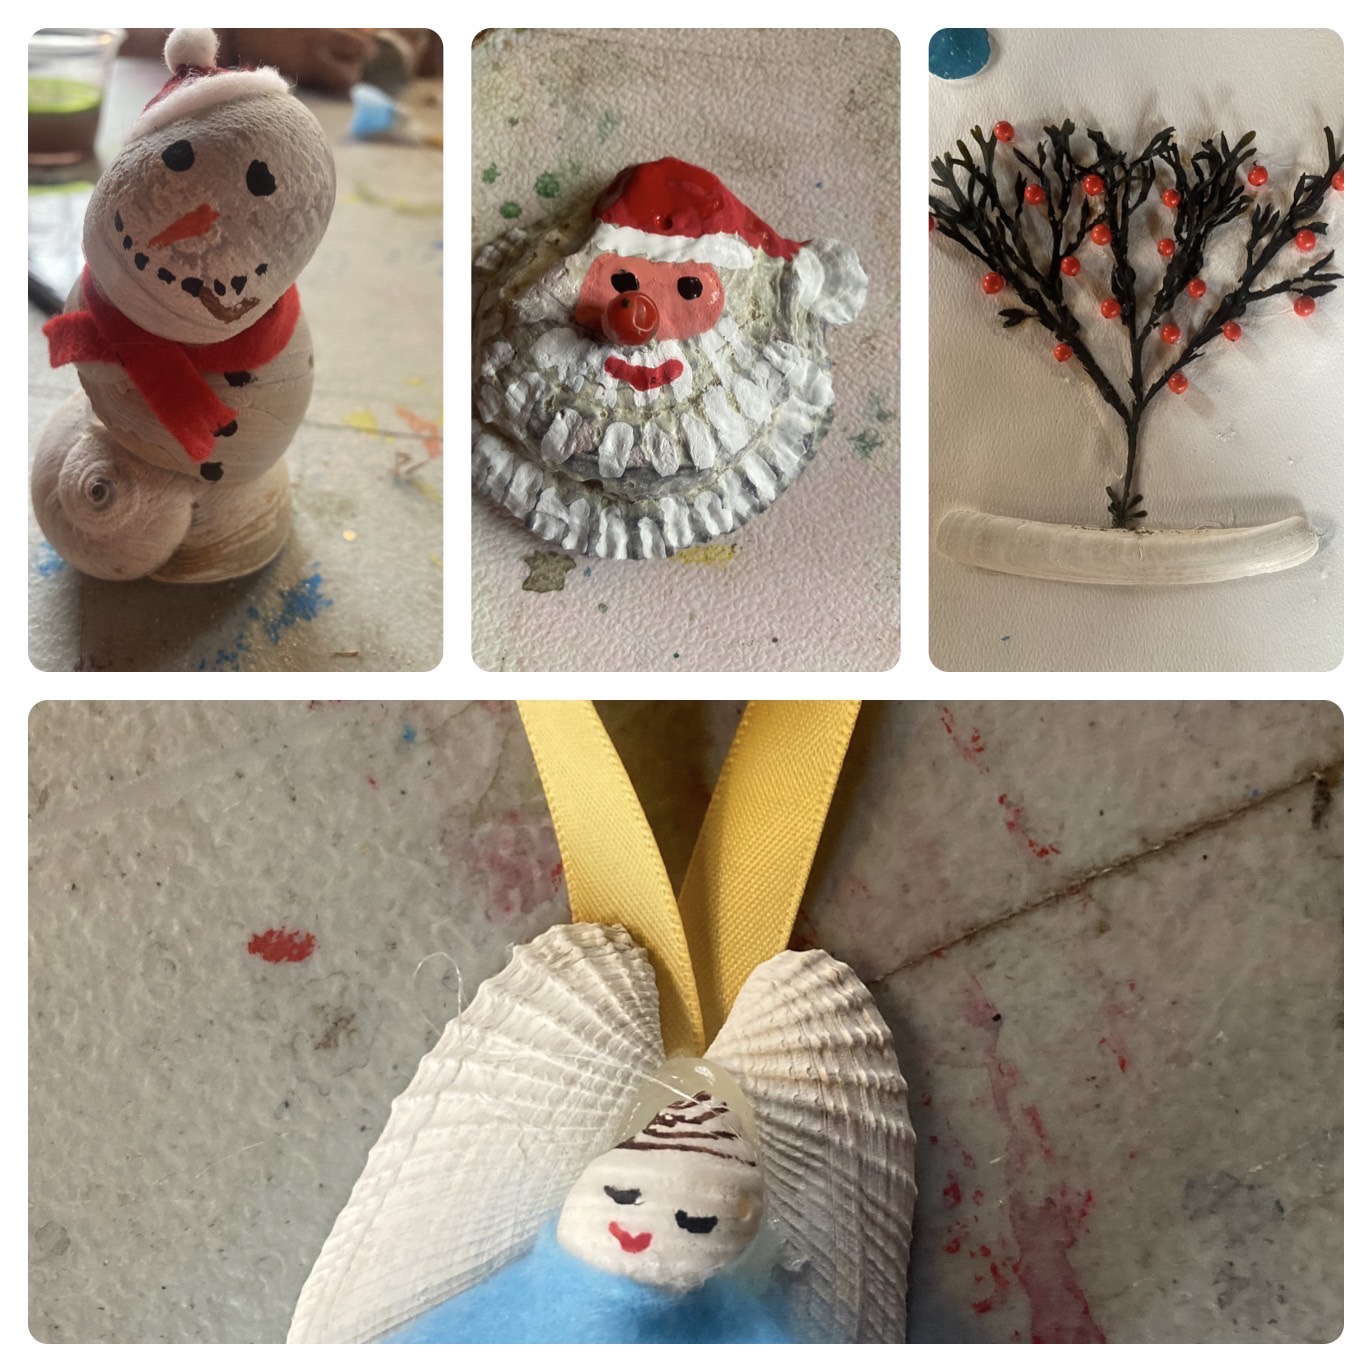 holiday crafts